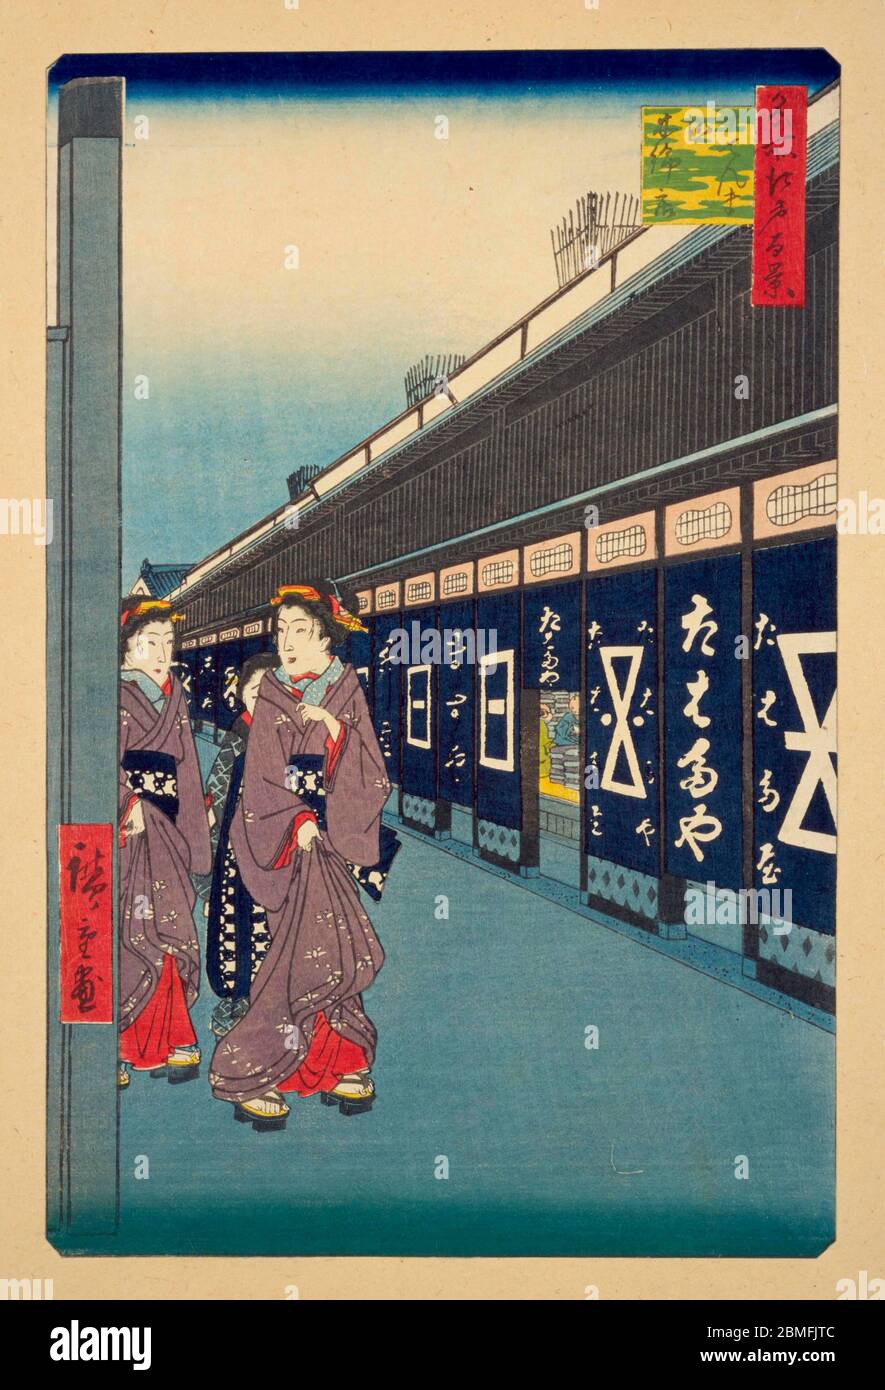 [ 1850er Japan - Geisha und Geschäfte ] - Street Szene mit Geisha und Baumwollläden in Odenma-Cho in Nihonbashi, Edo (derzeit Tokio), 1858 (Ansei 5). Dieser Holzschnitt ist Bild 7 in hundert berühmten Ansichten von Edo (名所江戸百景, Meisho Edo Hyakkei), einer Serie von Ukiyoe Künstler Utagawa Hiroshige (歌川広重, 1797–1858) erstellt. Es ist eine von 42 Frühlingsszenen der Serie. Titel: Geschäfte mit Baumwollwaren in Odenma-Cho (大てんま町木綿店, Otenma-Cho momendana) Vintage Ukiyoe Holzschnitt aus dem 19. Jahrhundert. Stockfoto